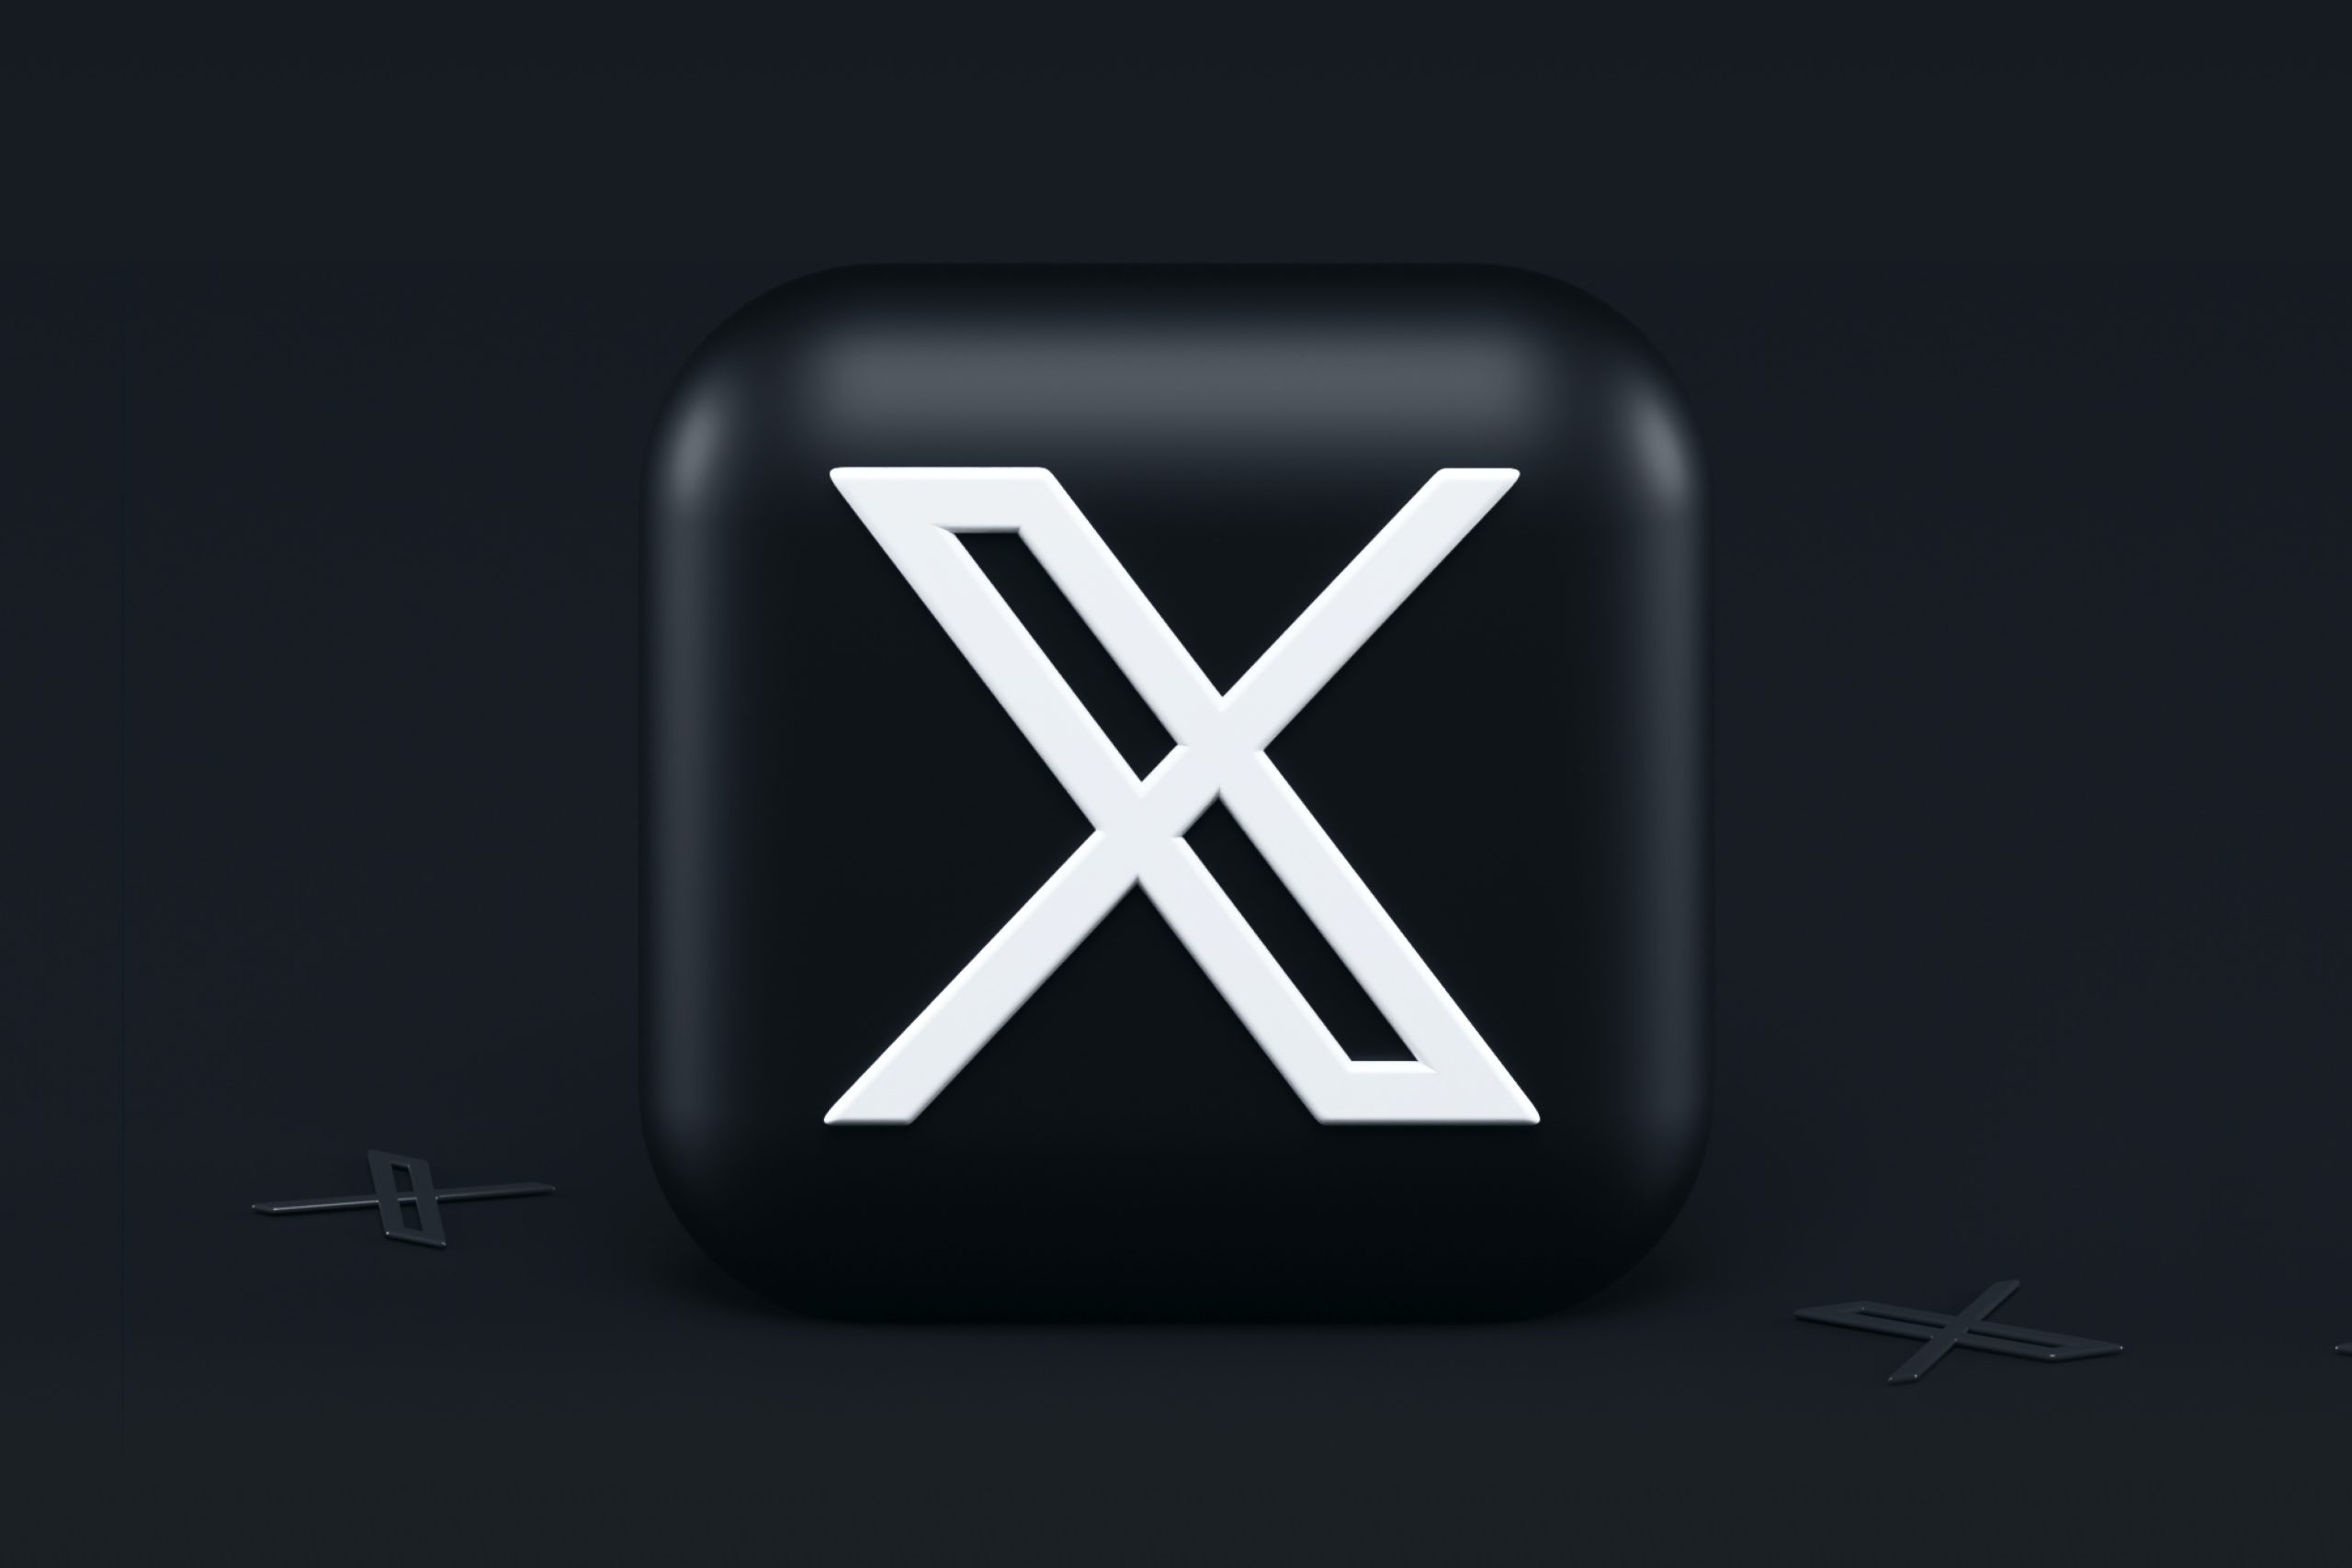 X Memperlahankan Proses Membuka Pautan Ke Laman Pesaing Dan Berita